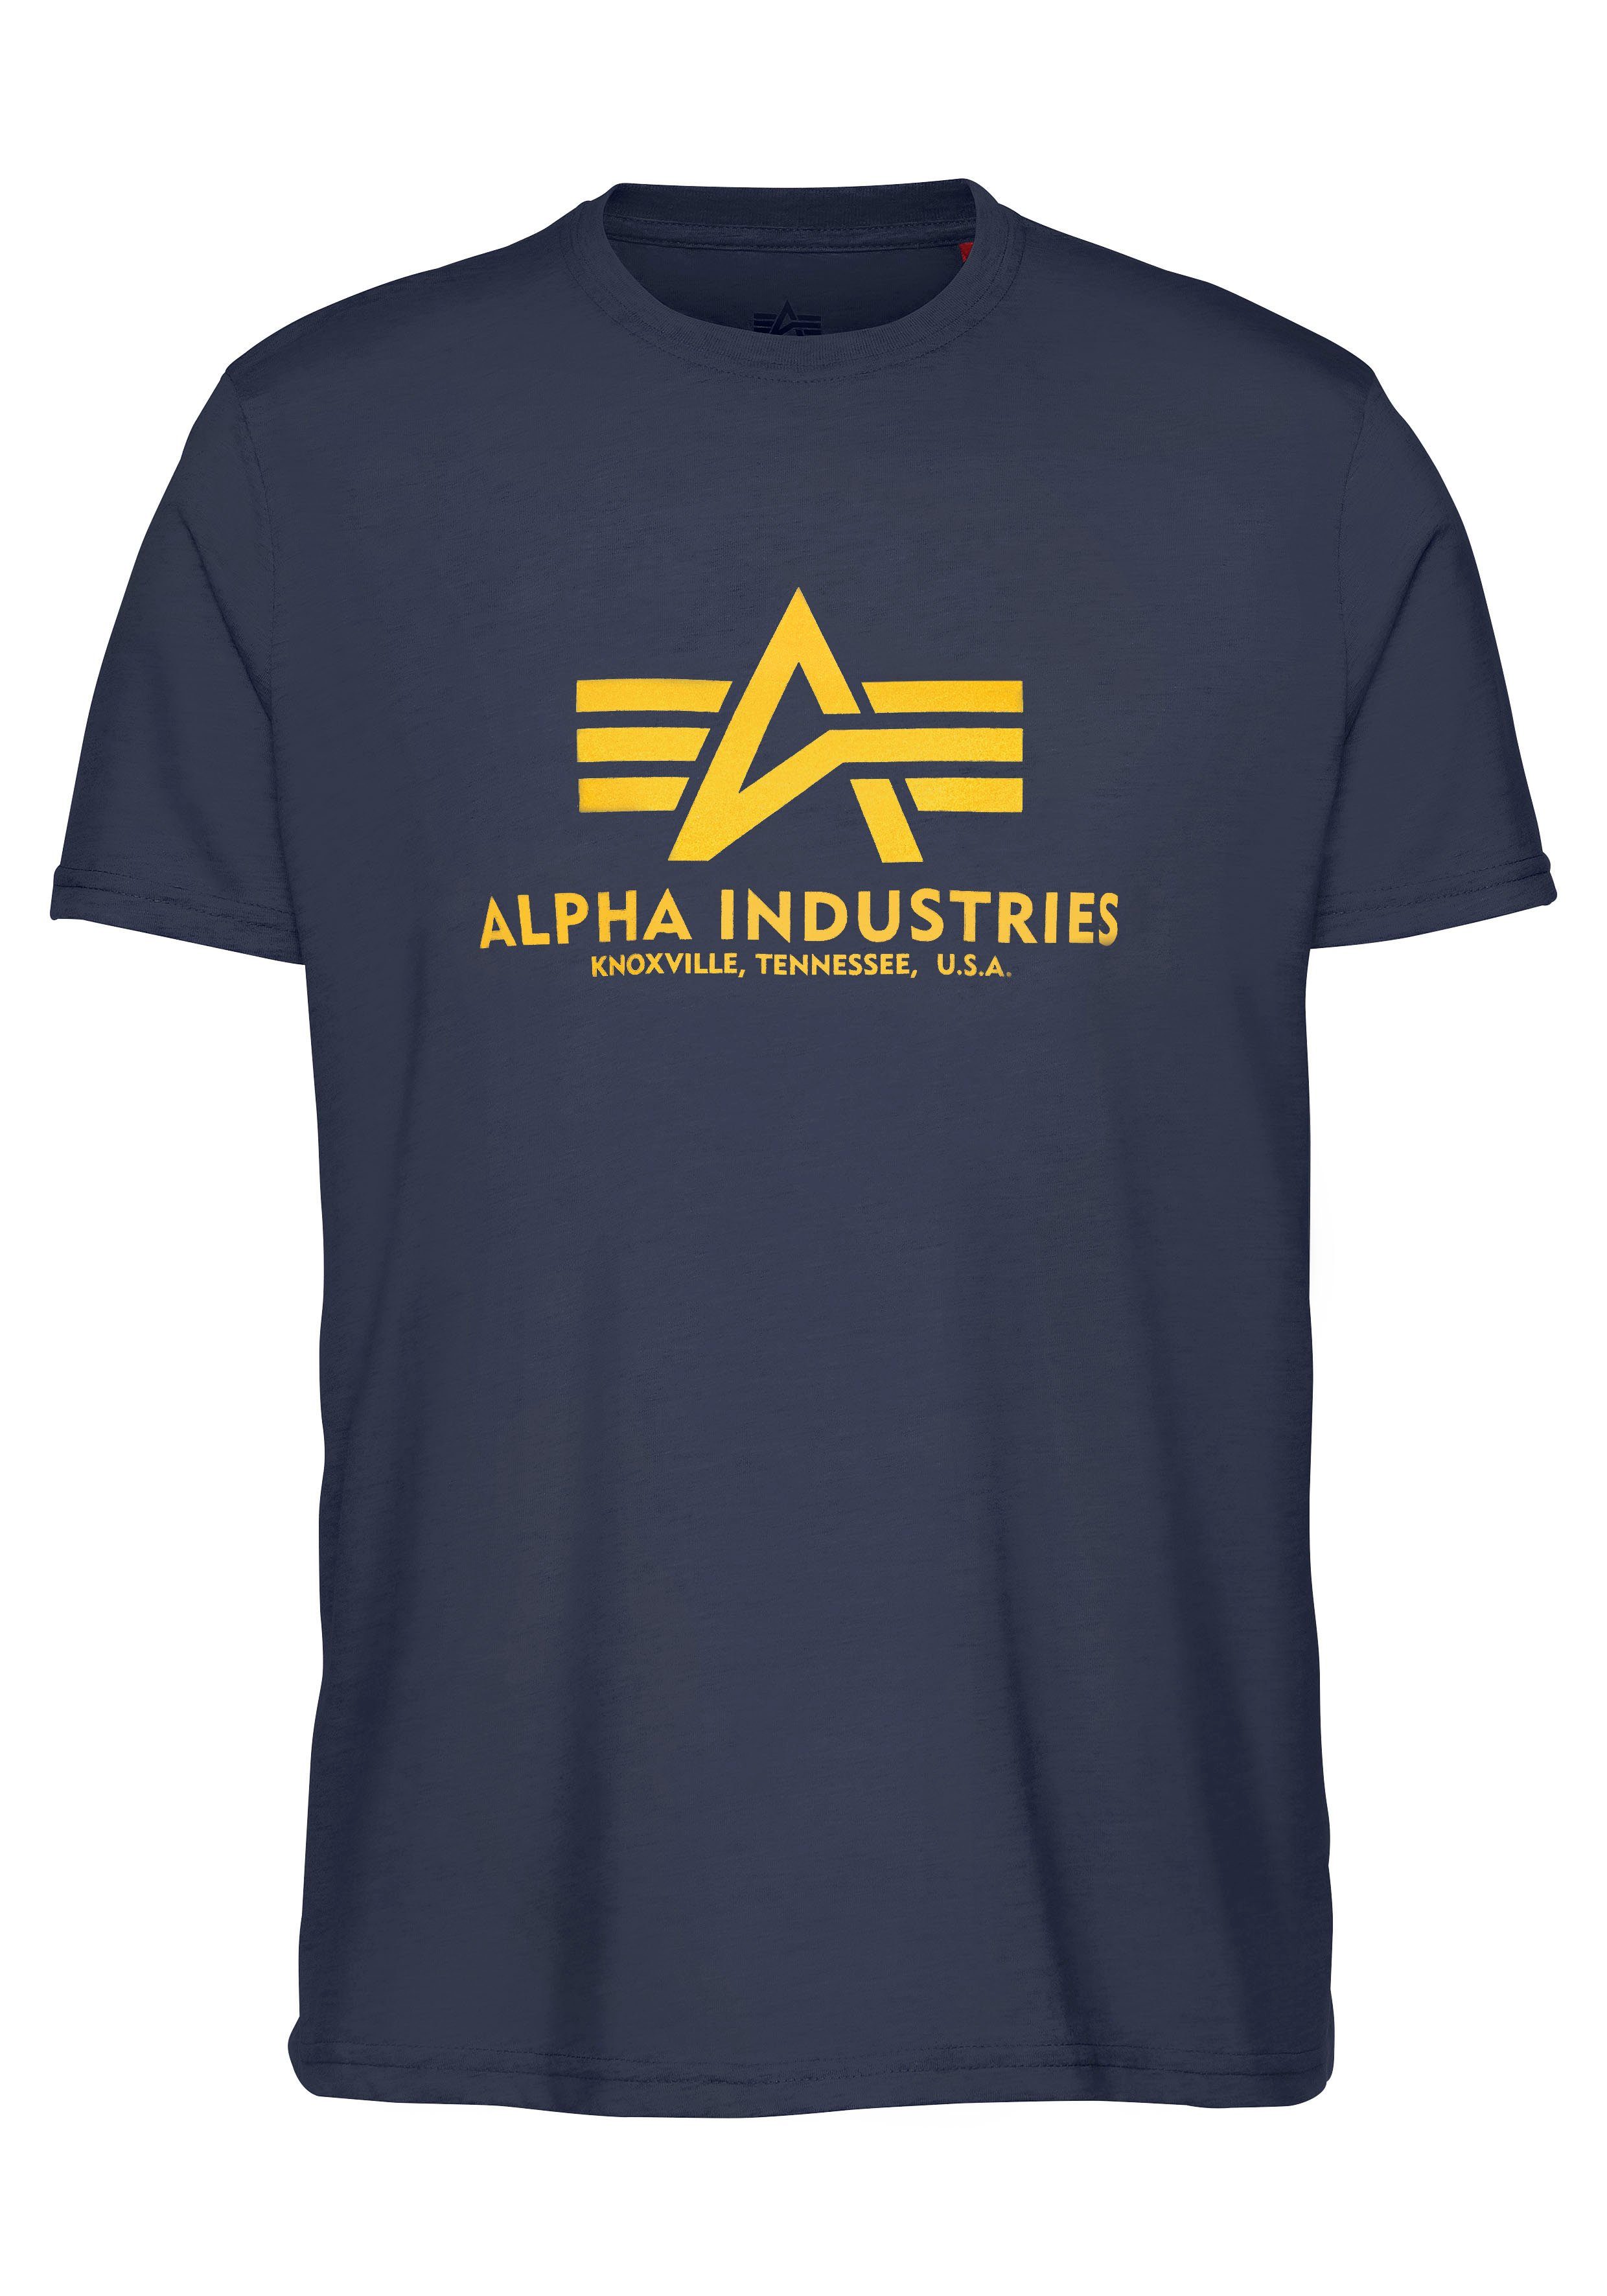 T-Shirt T-Shirt Industries navy new Basic Alpha